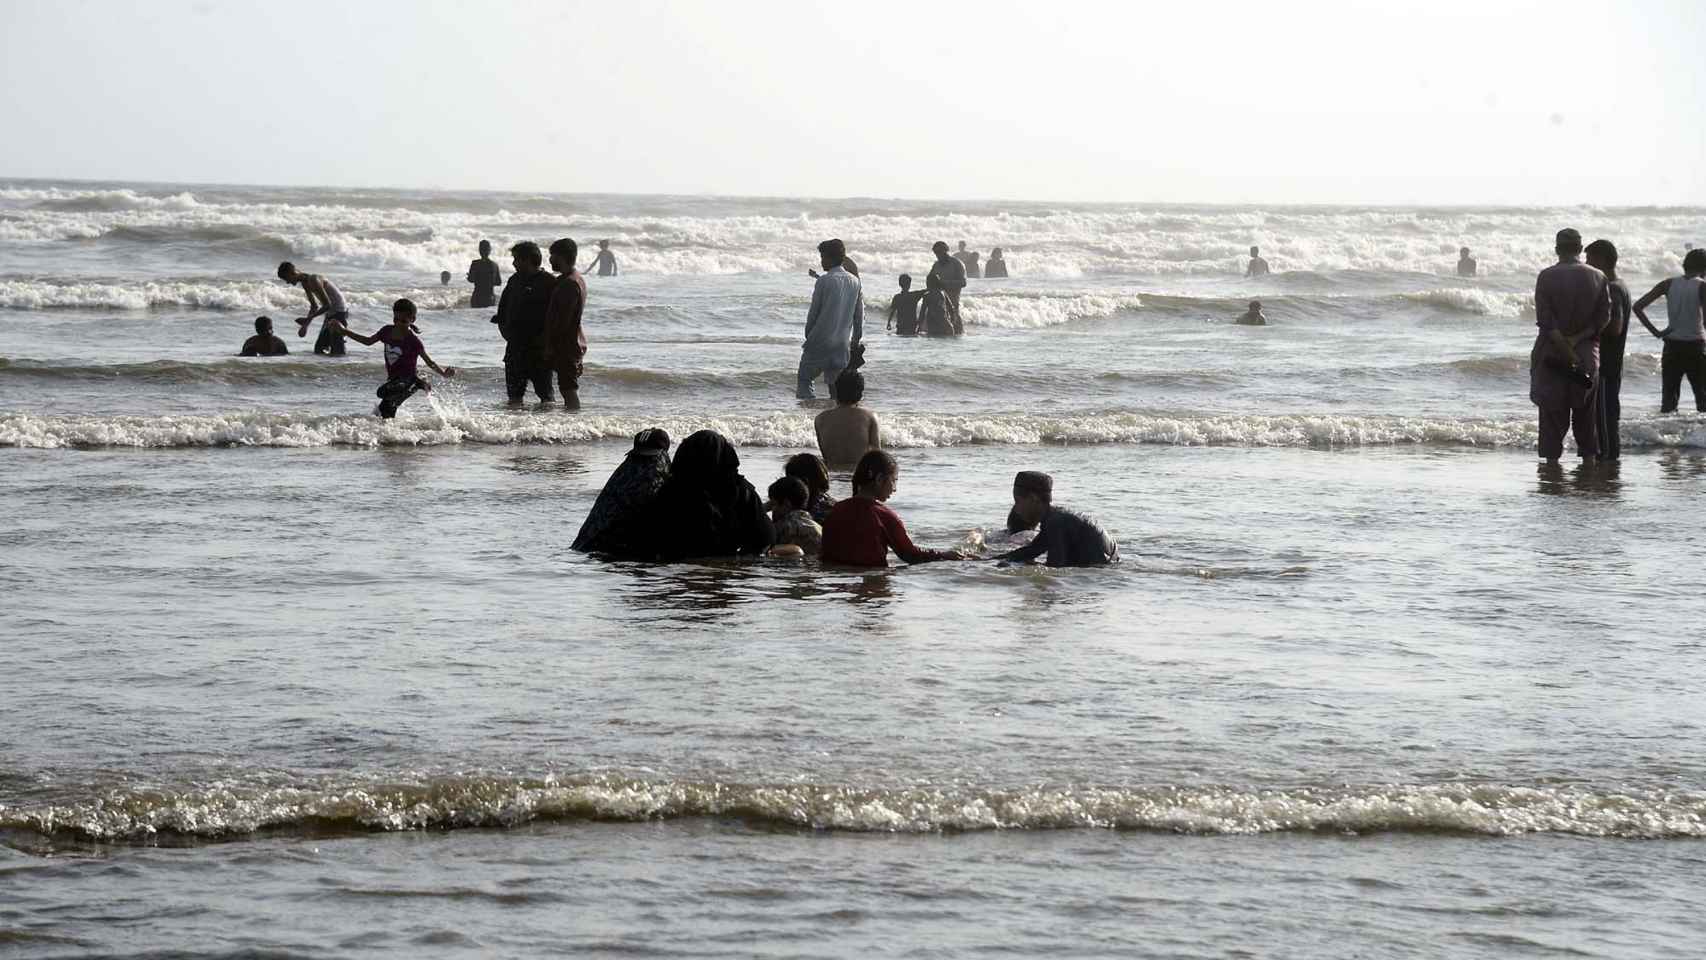 Varias personas disfrutan de un día en la playa en Pakistán, donde las temperaturas superaron los 50 ºC en mayo.